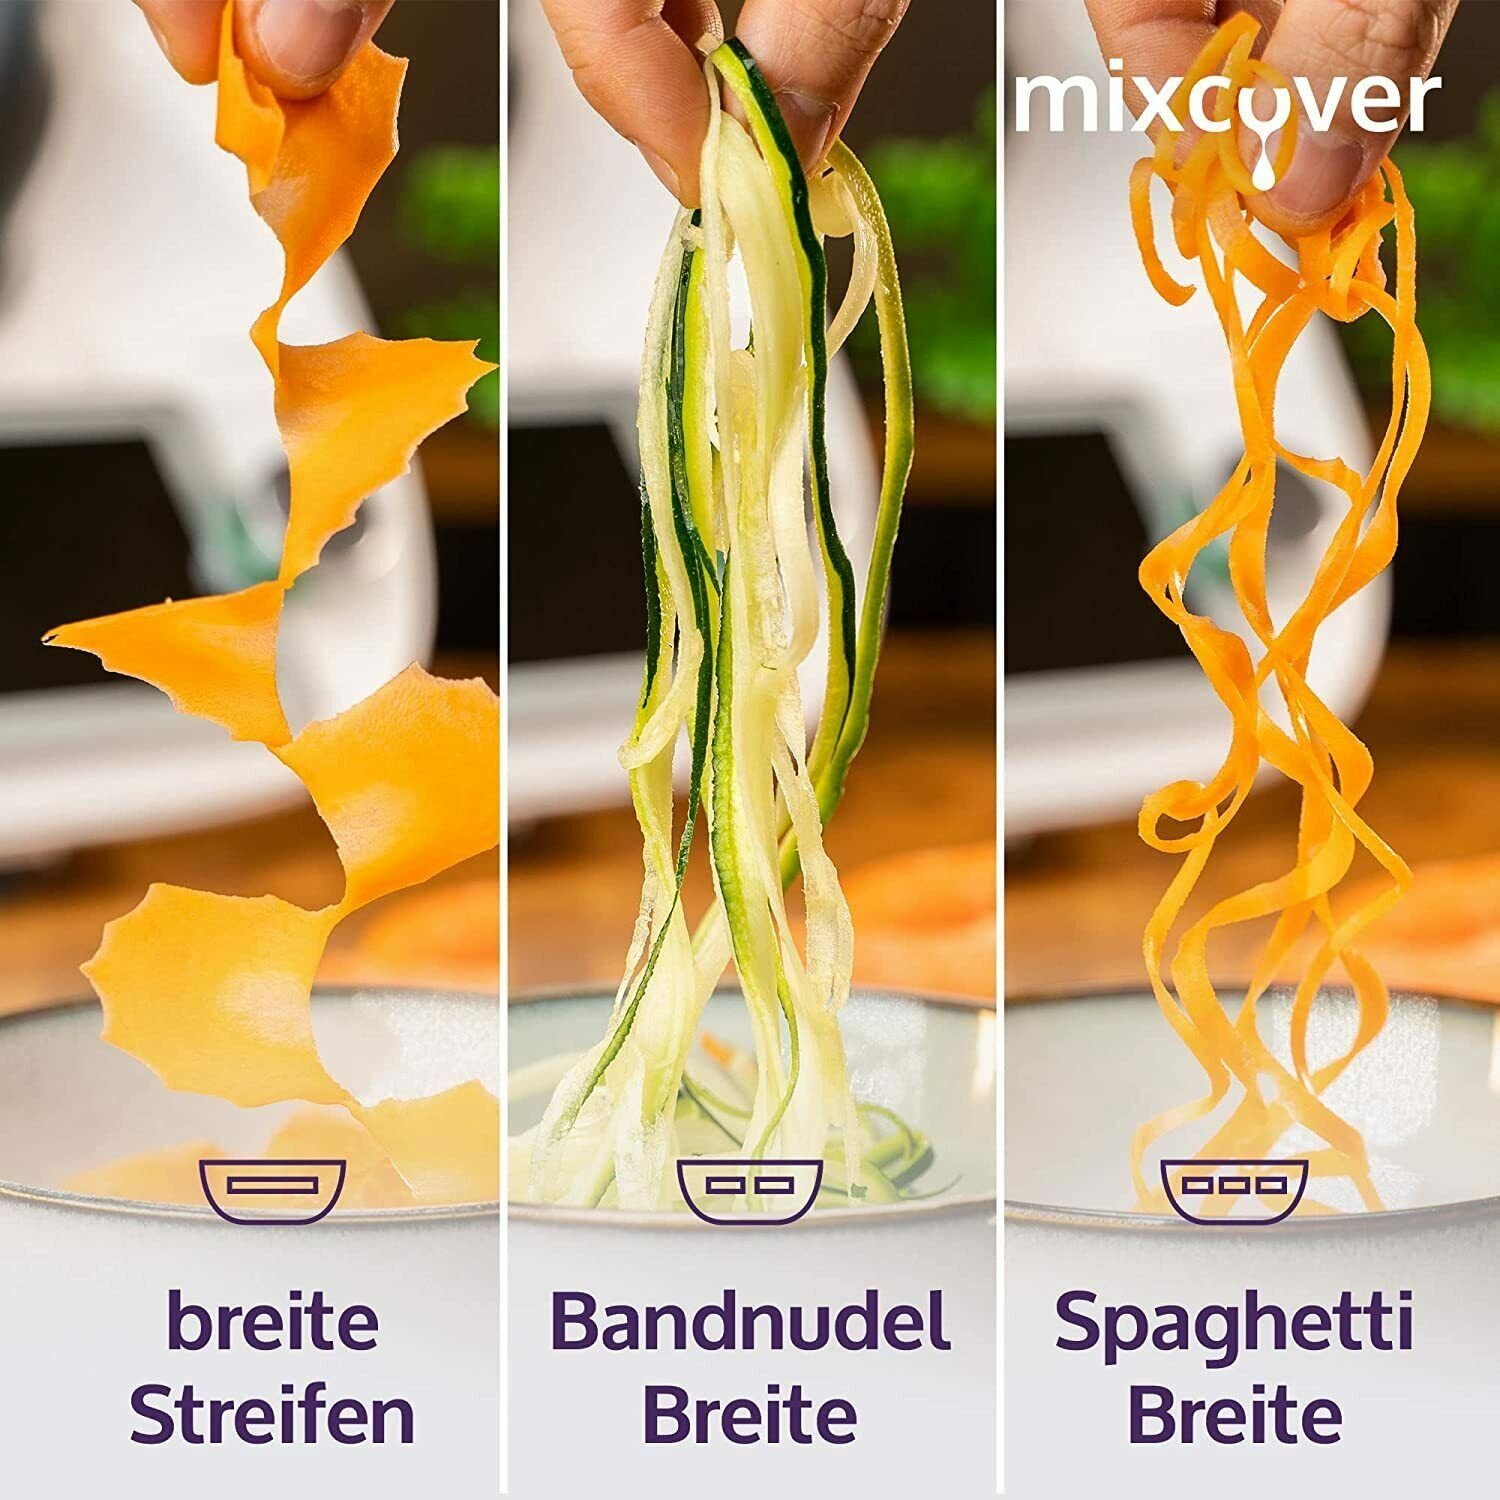 TM5 Gemüsenudeln Küchenmaschinen-Adapter kompatibel mixcover TM6 Mixcover Thermomix mit schneiden Spiralschneider